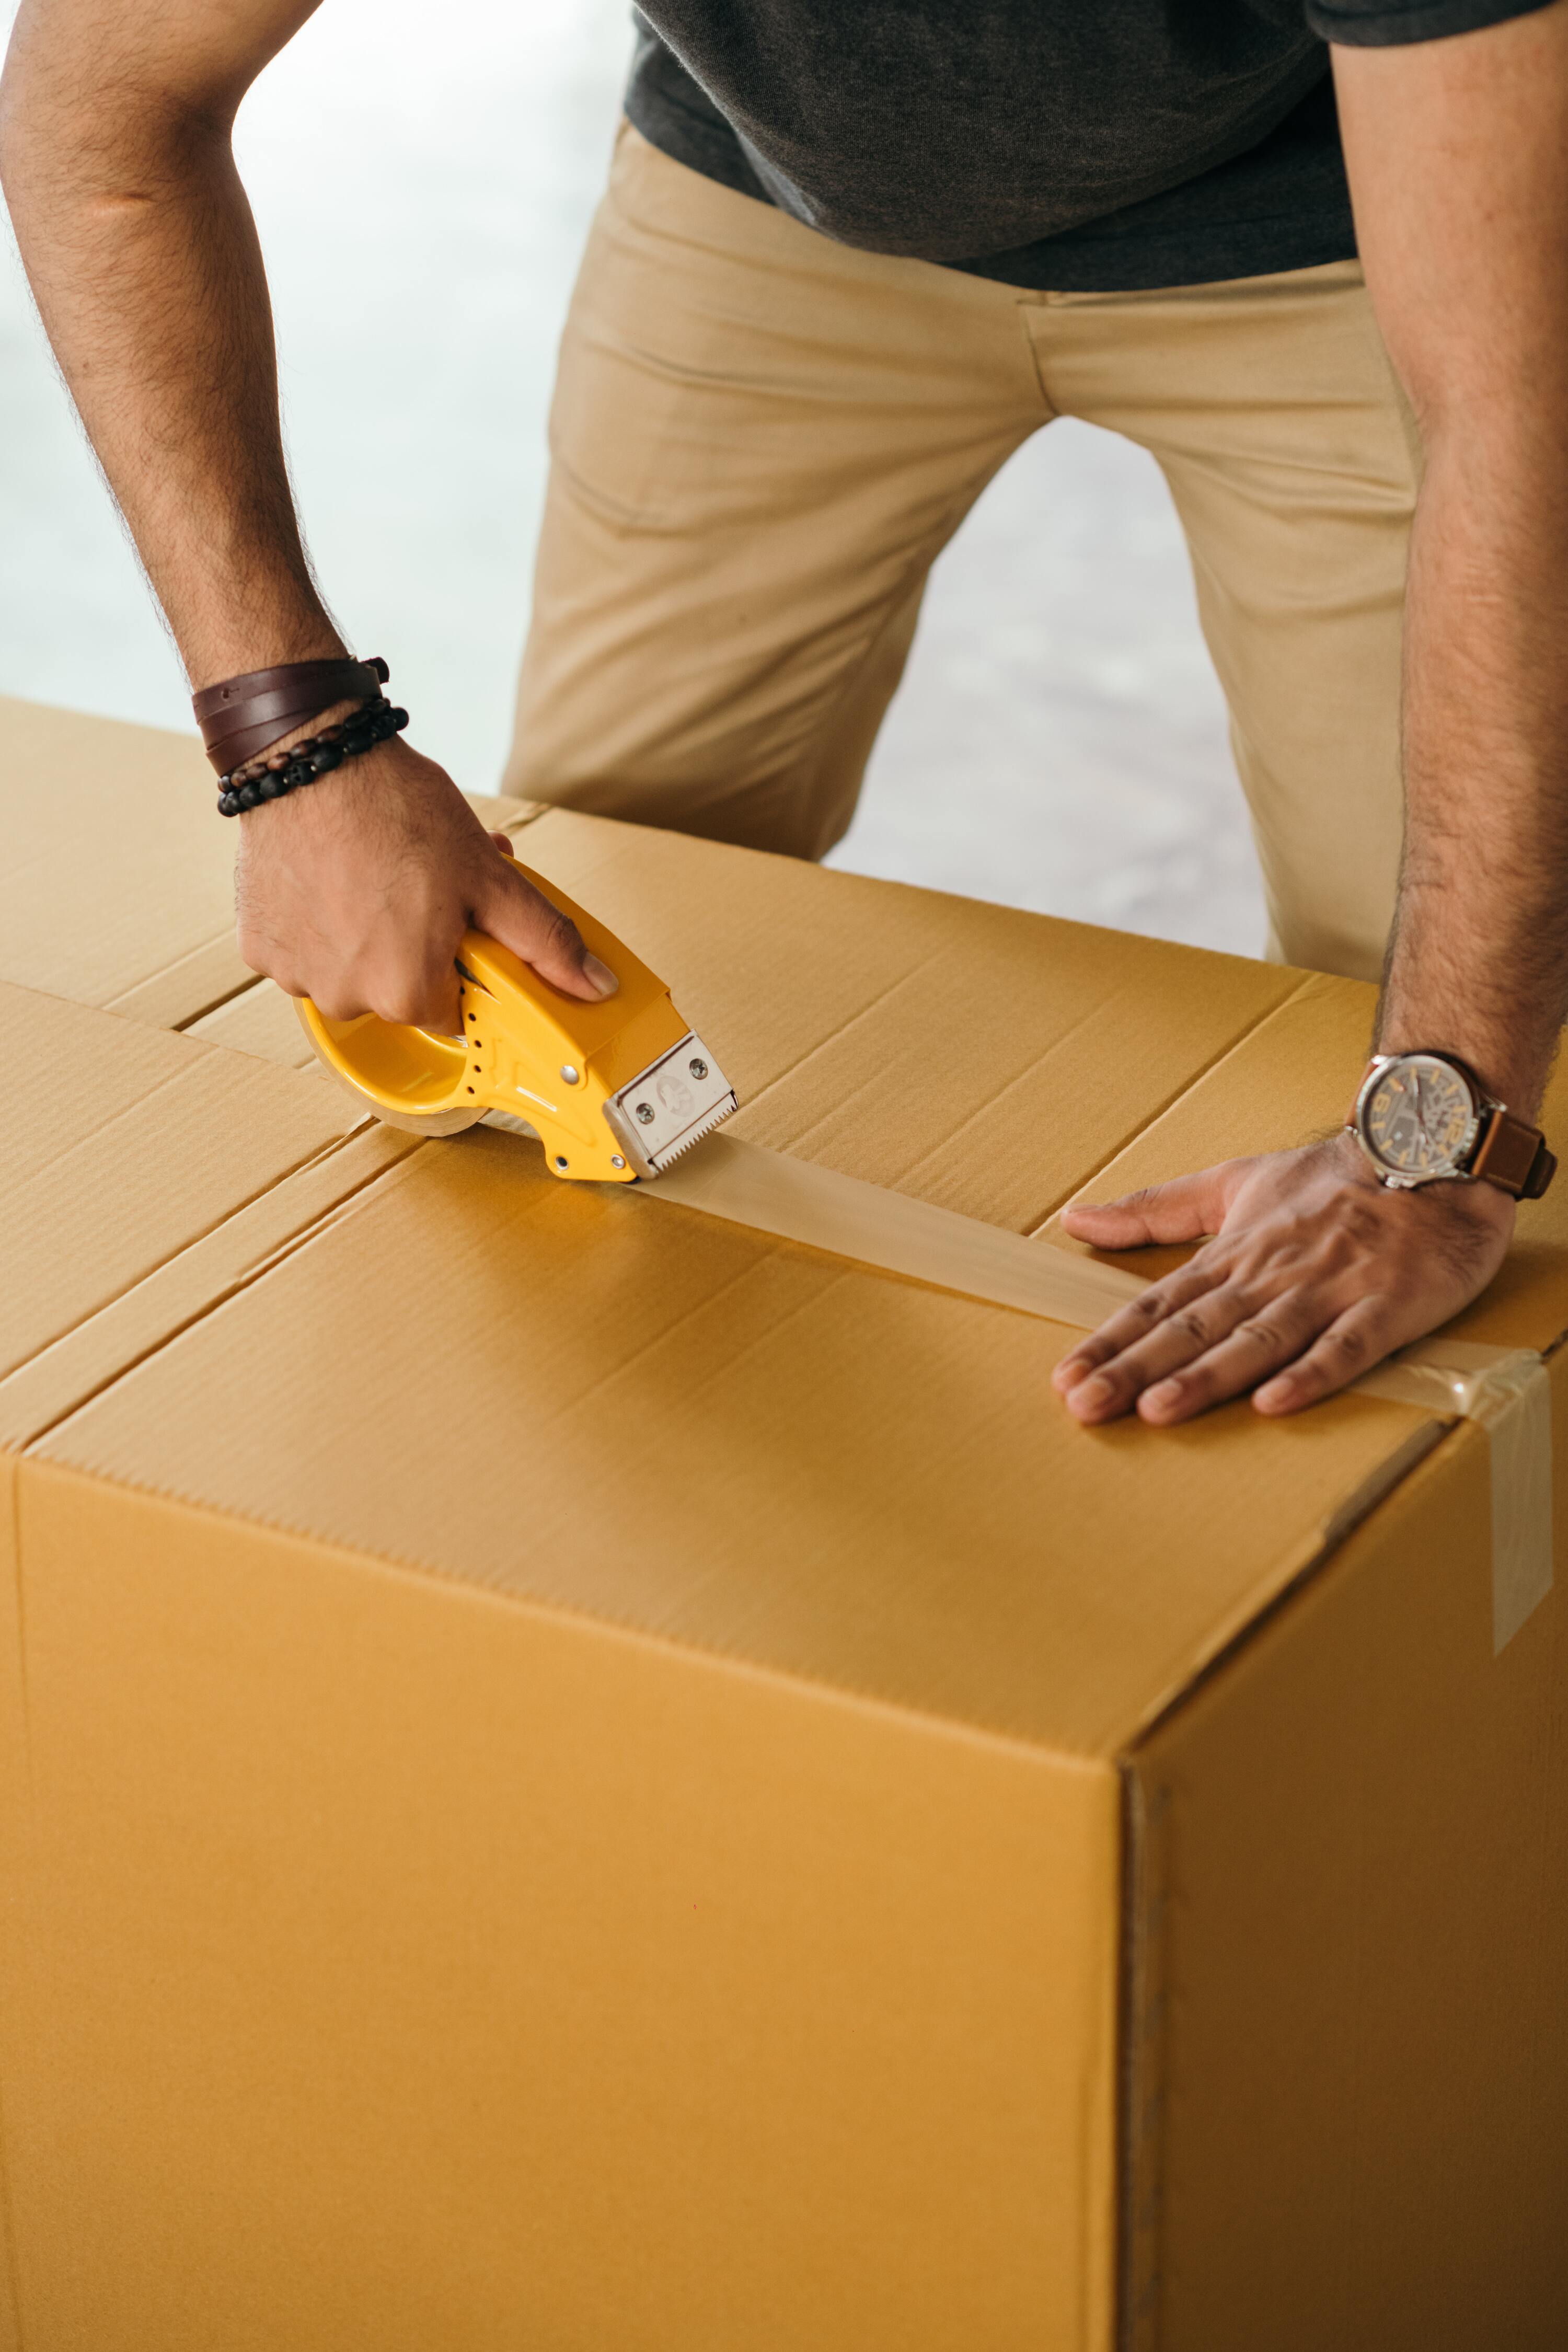 Un homme s'occupeant de l'emballage de ses affaires pour limiter les coûts de son déménagement